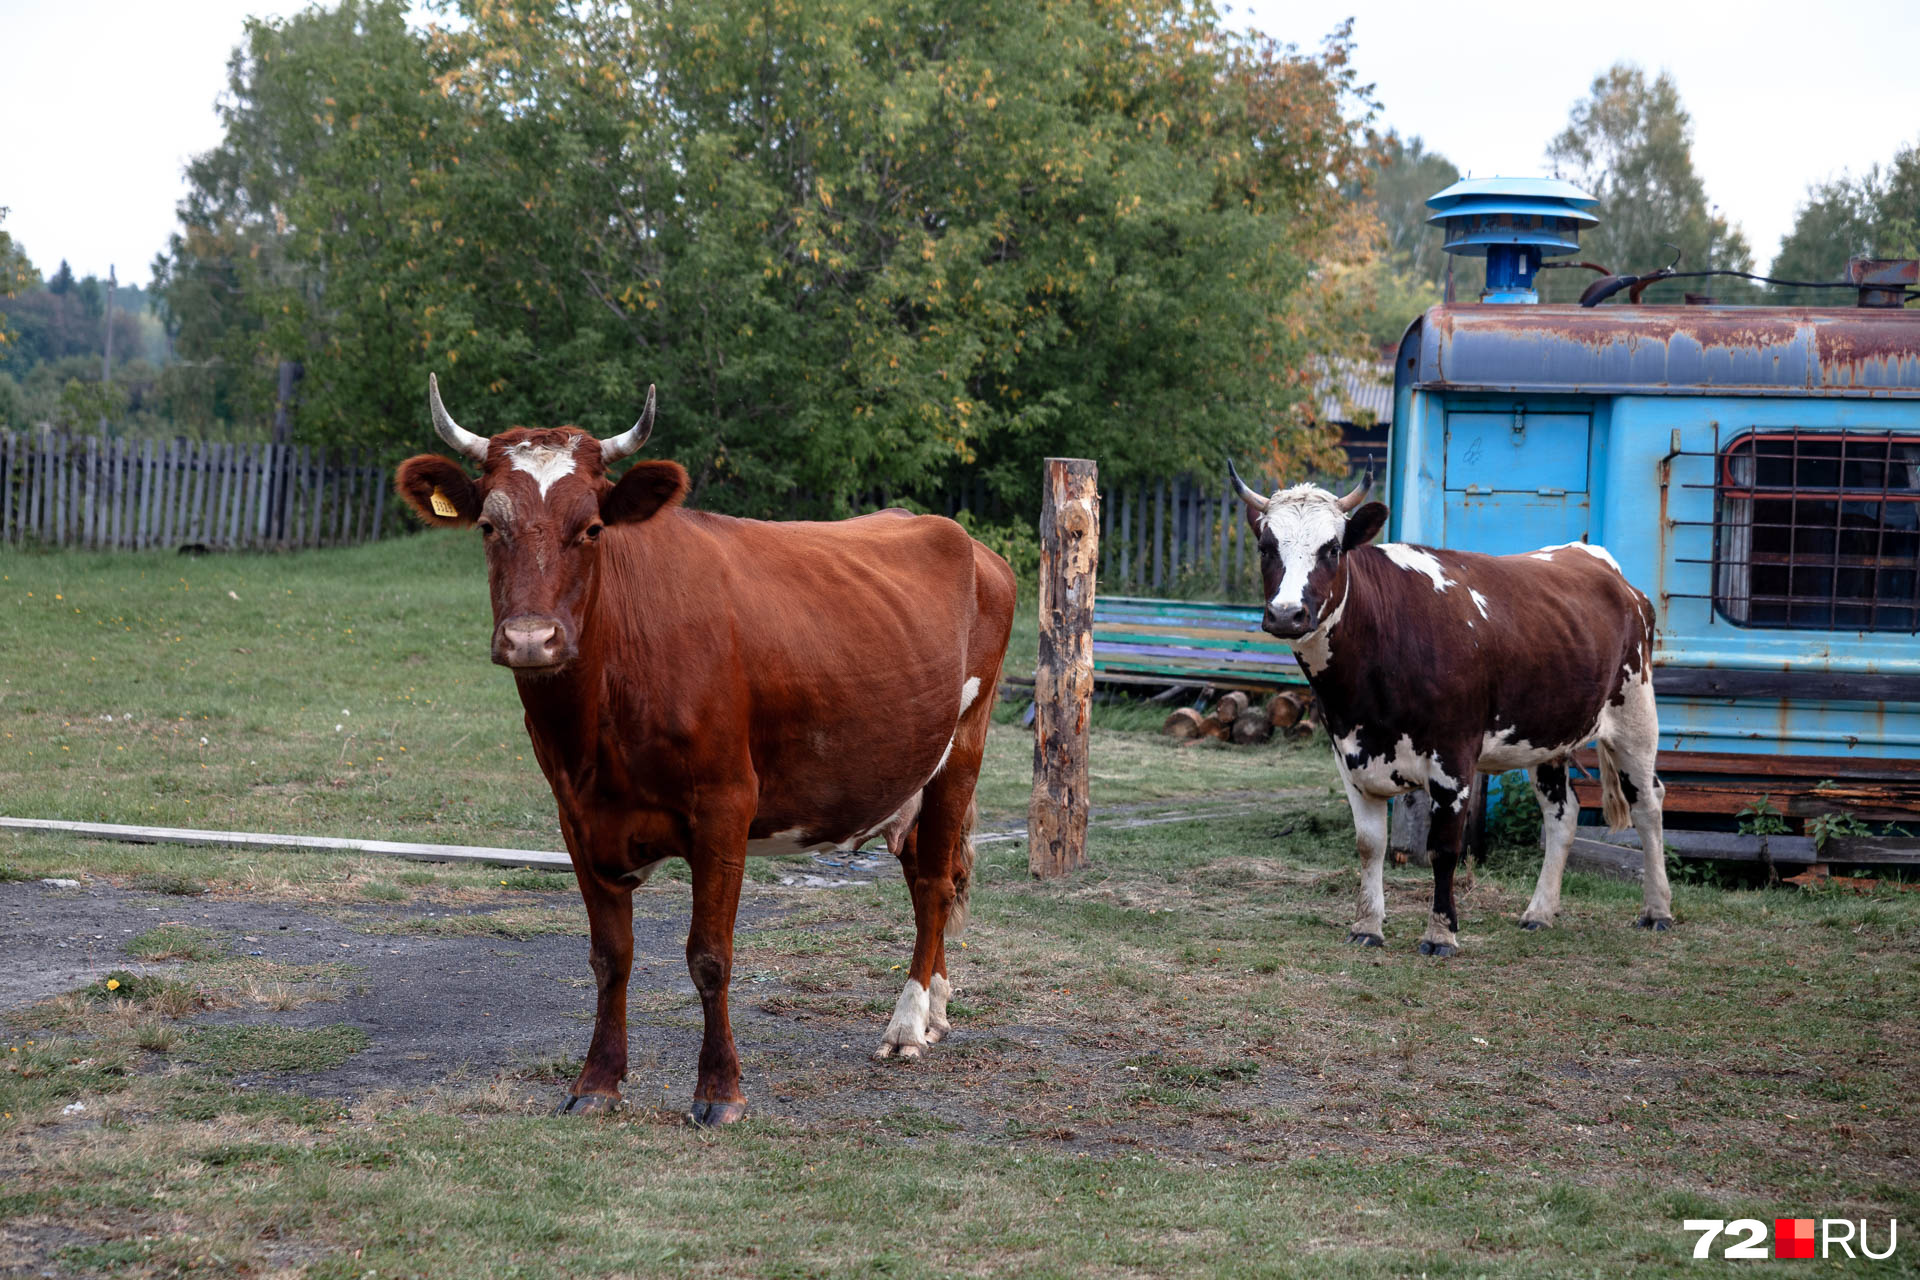 Гуляющих коров в деревне можно увидеть чуть ли не на каждом шагу. Они бродят и около новотаповской администрации, и у магазинов